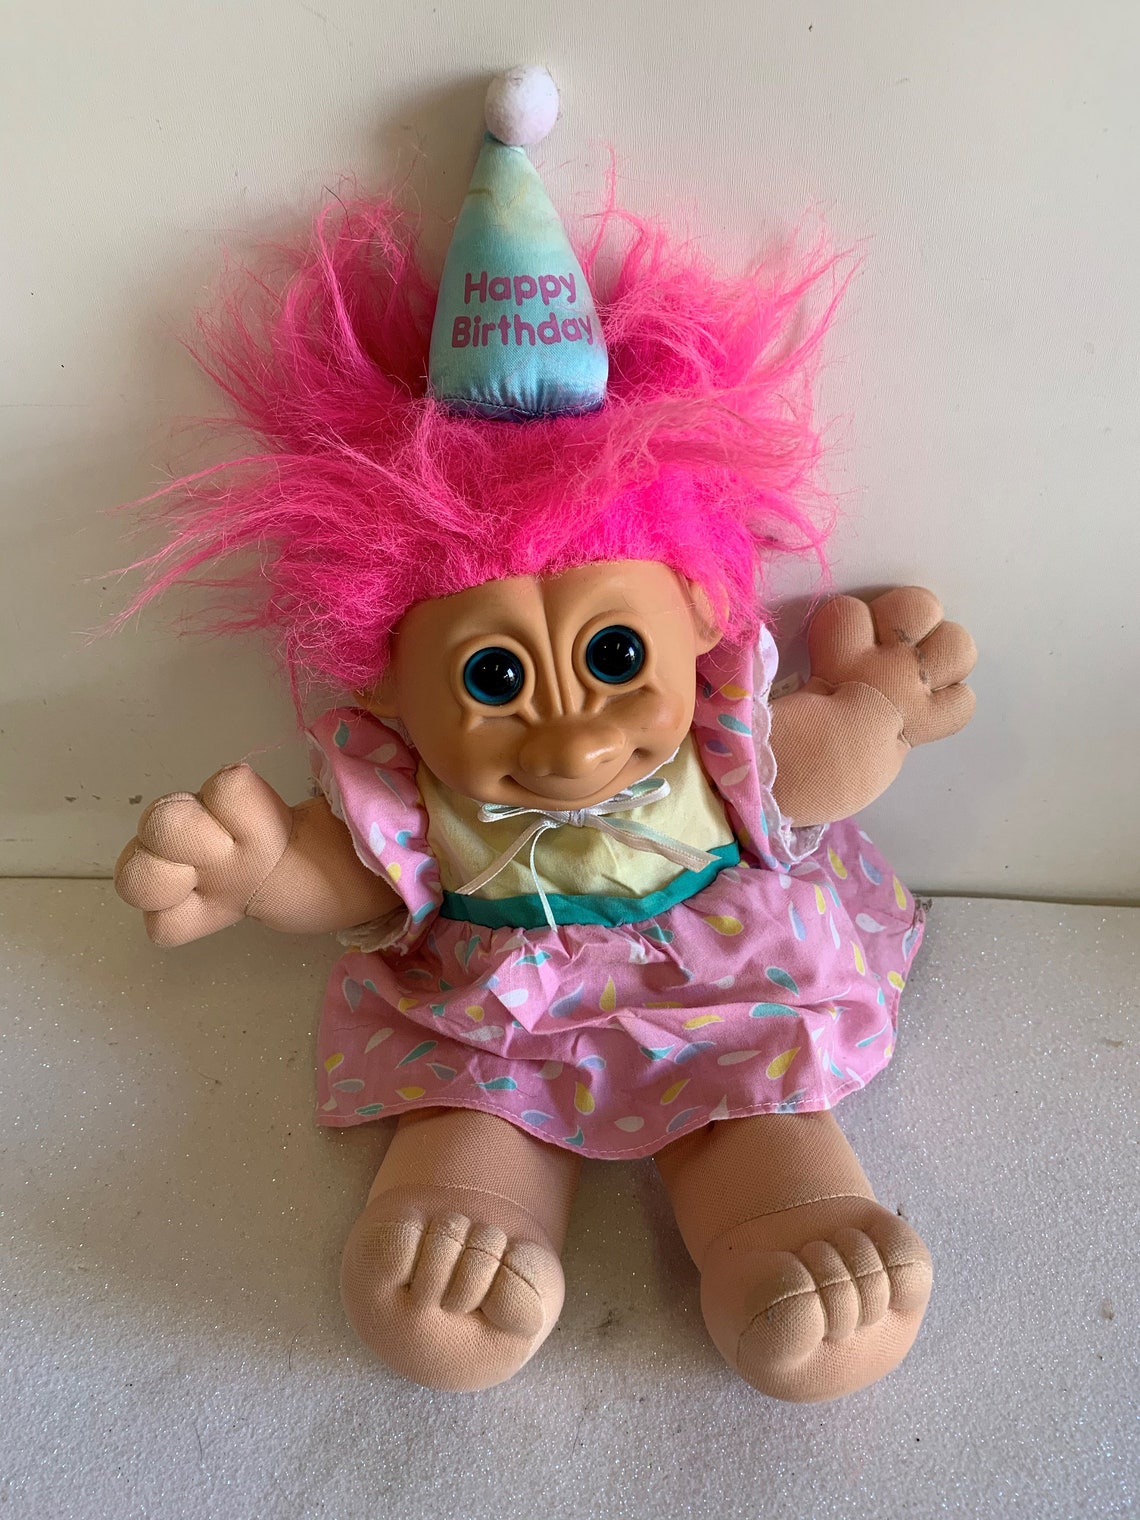 Vintage 90s Troll Doll Vintage Trolls Dolls Russ Troll Doll Etsy